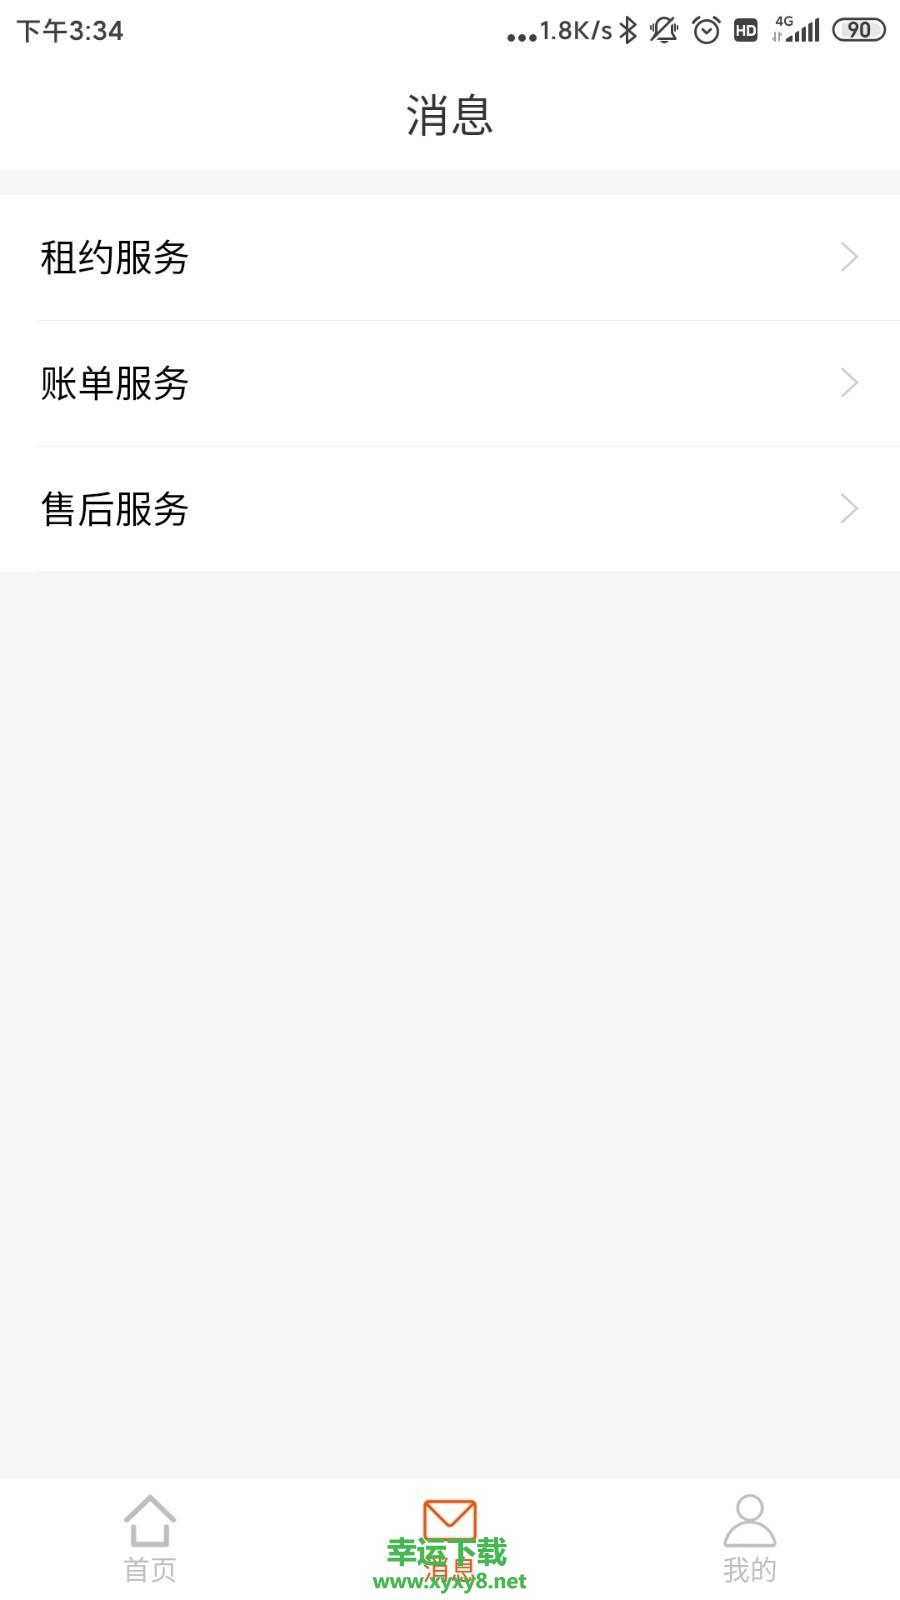 乐尚居友手机版 v1.0.4 官方最新版